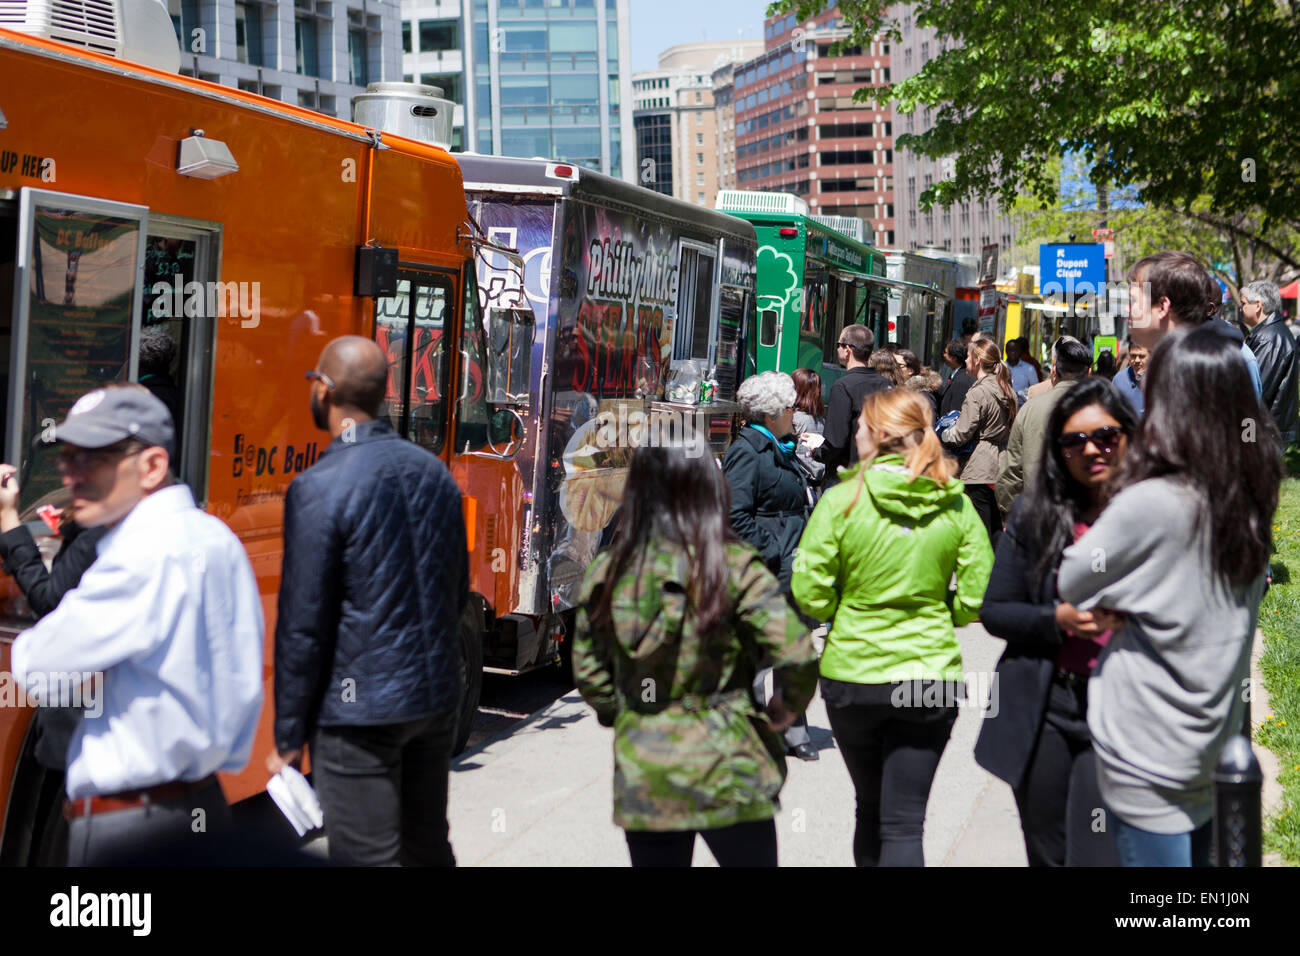 Les camions de nourriture s'alignent sur une rue urbaine - Washington, DC USA Banque D'Images